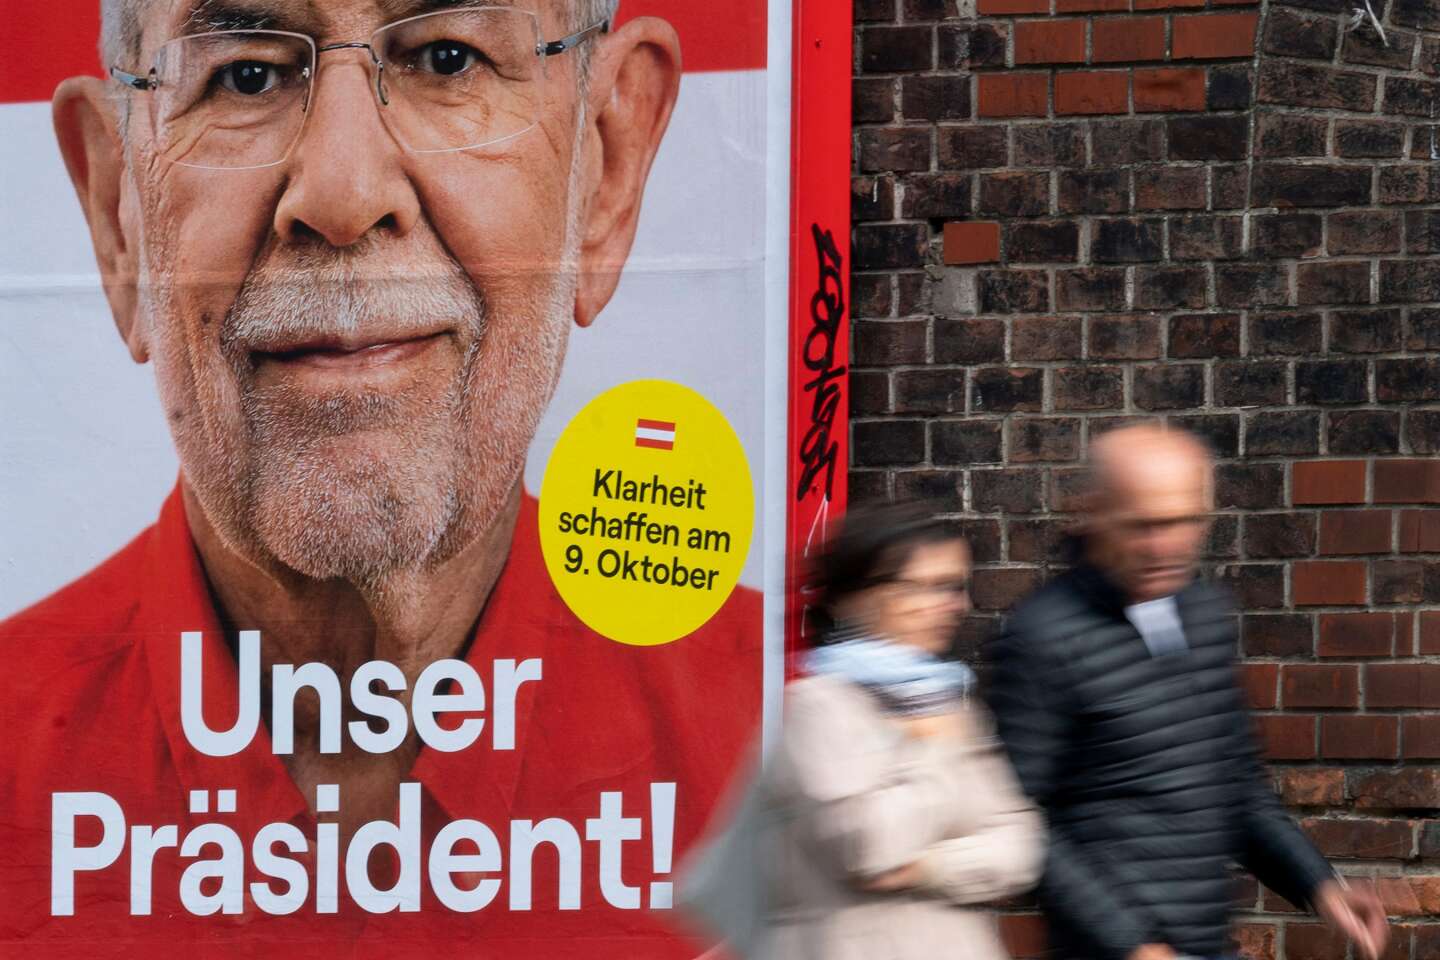 Österreich wählt seinen Präsidenten, wobei der scheidende Umweltschützer Van der Bellen der Favorit ist